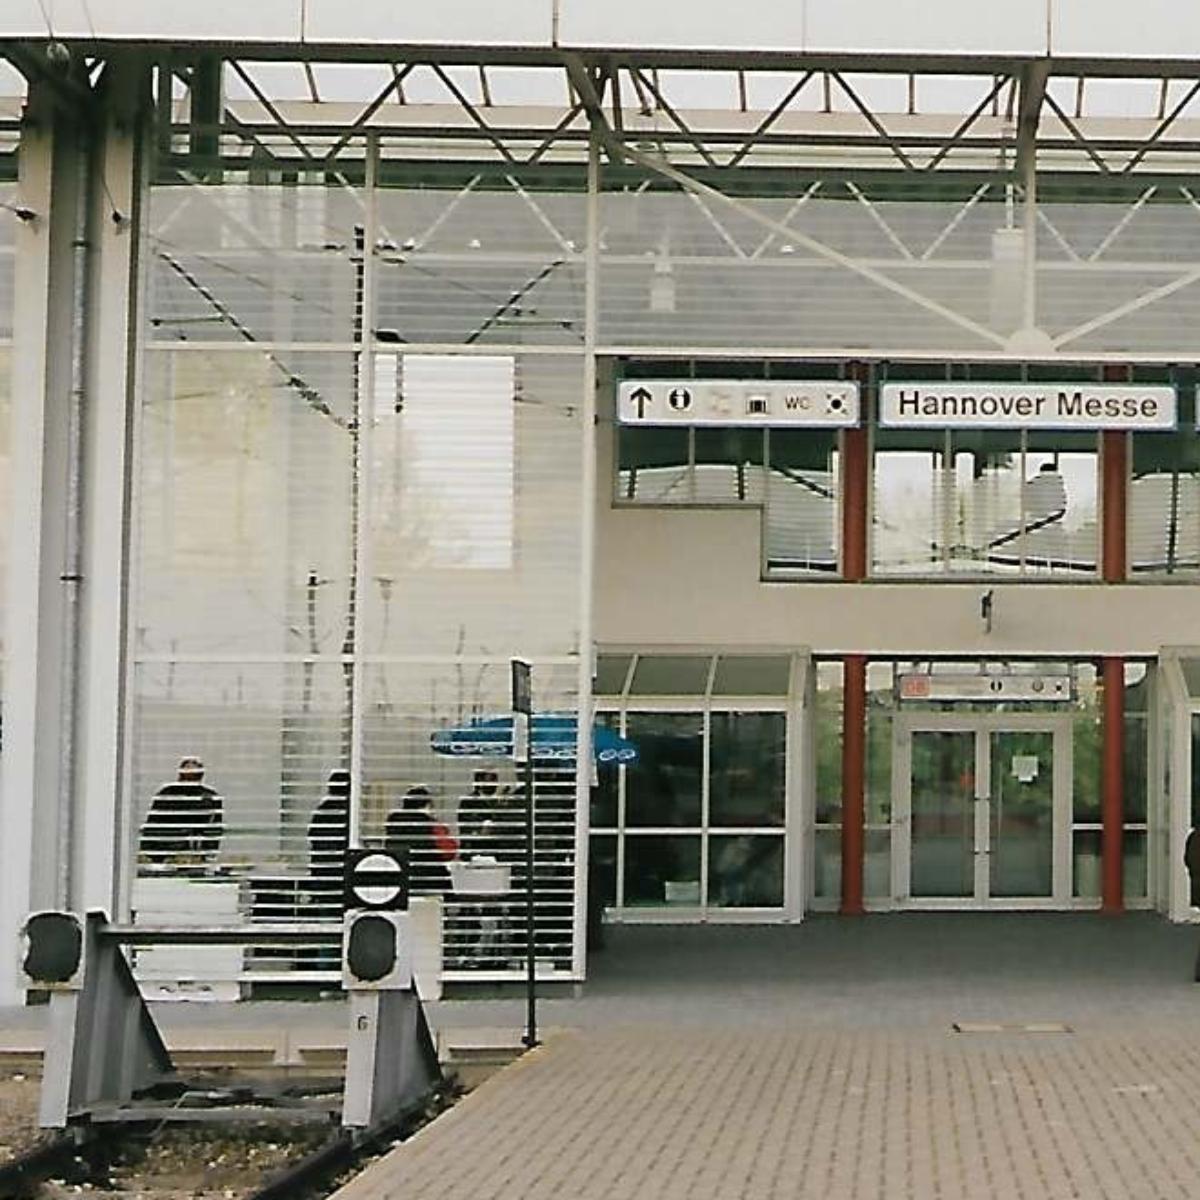 Hannover-Messe/Laatzen Station 